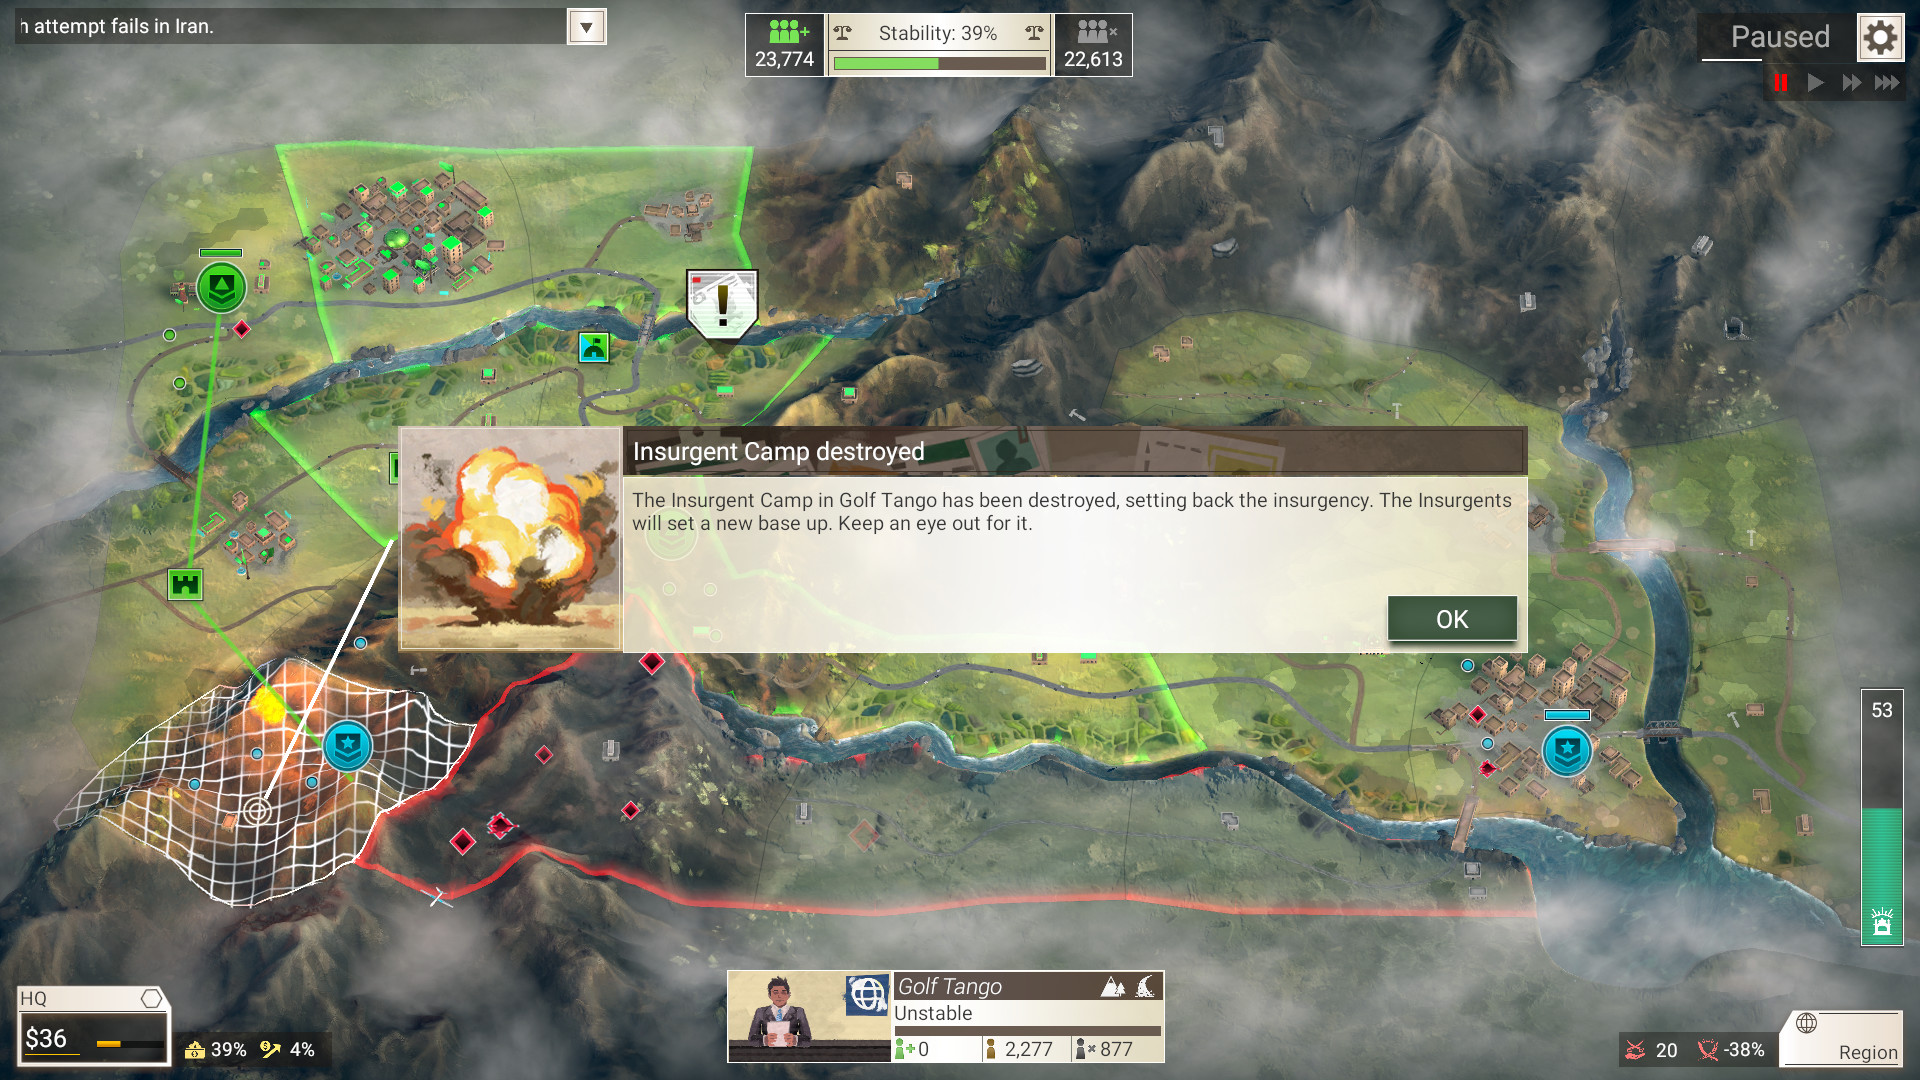 策略模拟游戏《反叛公司》Steam版10月15日发售